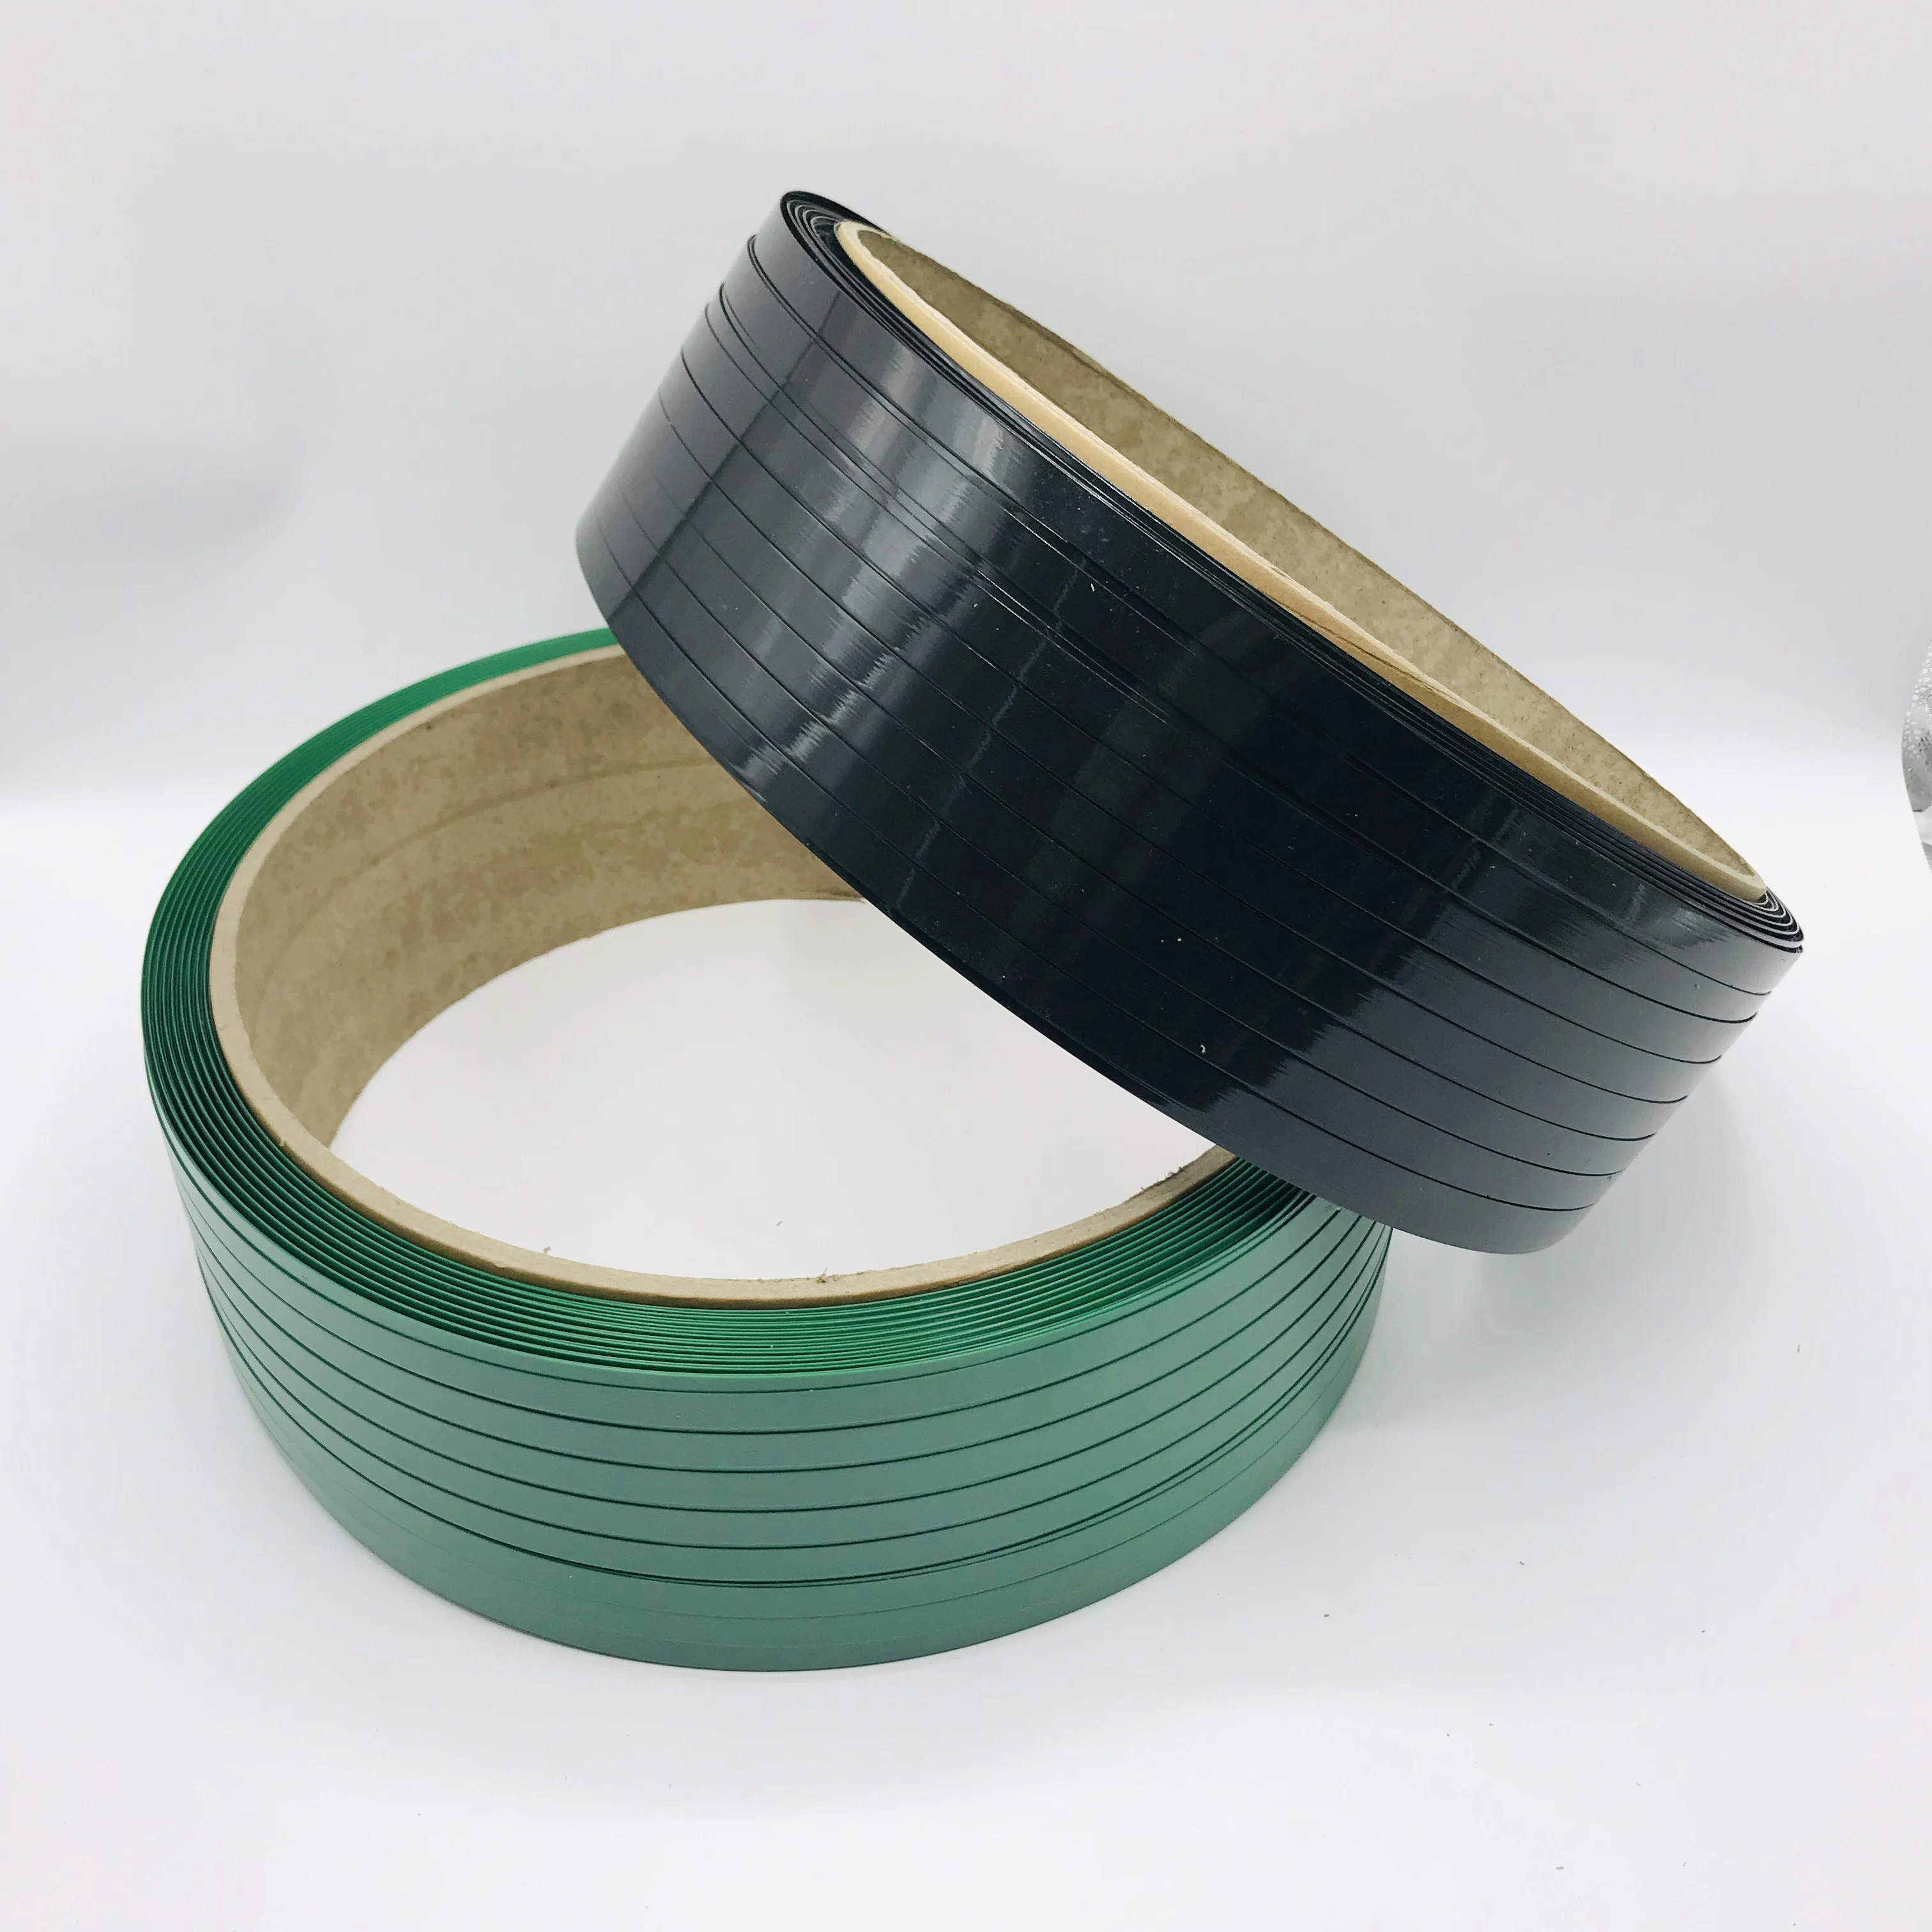 ZILI высокопрочная гладкая зеленая полиэфирная лента ПЭТ пластиковая обвязка для упаковки